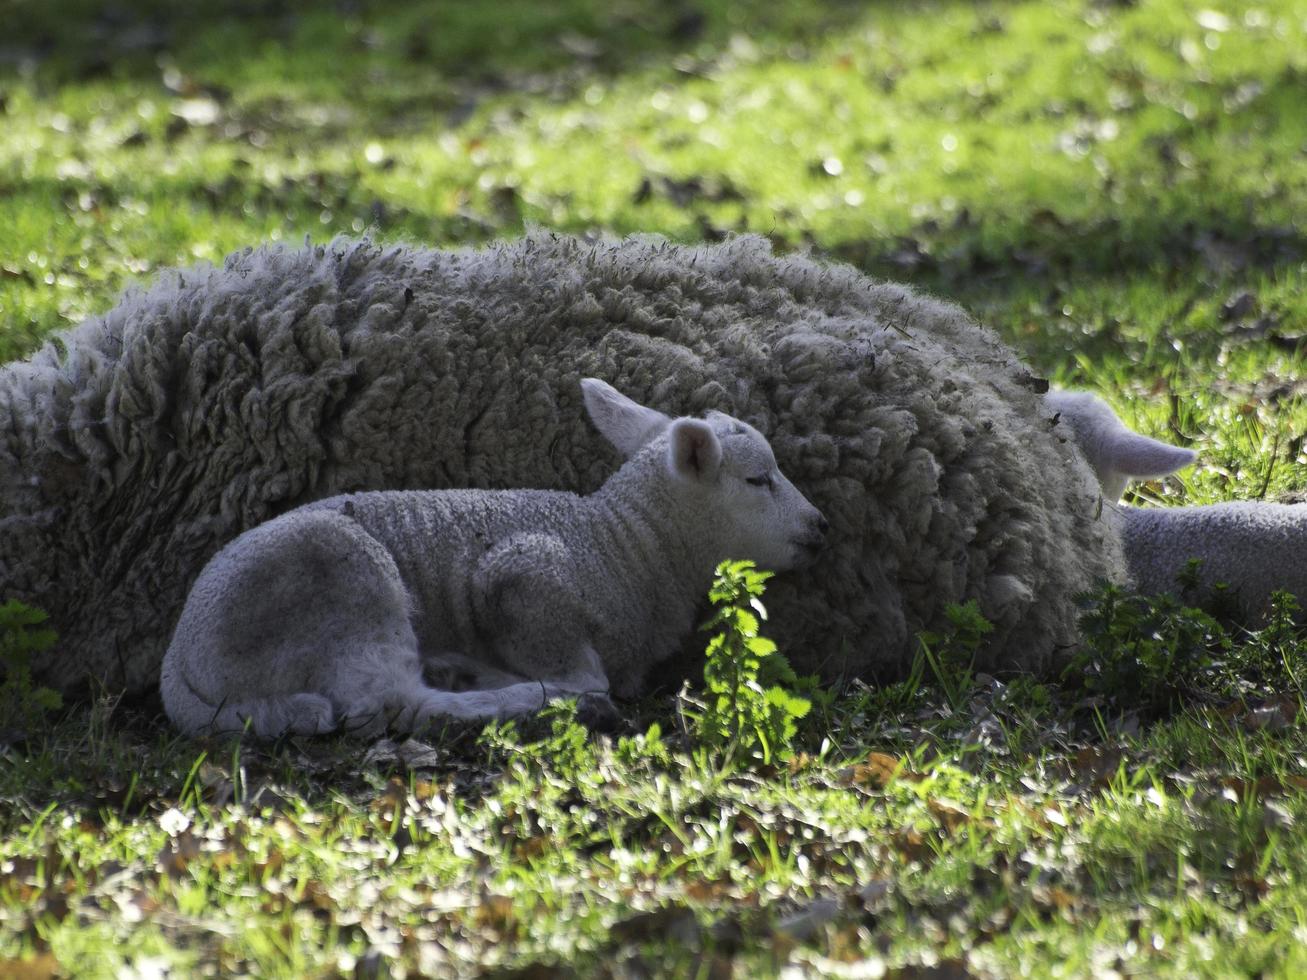 Schafe auf einem Feld in Westfalen foto